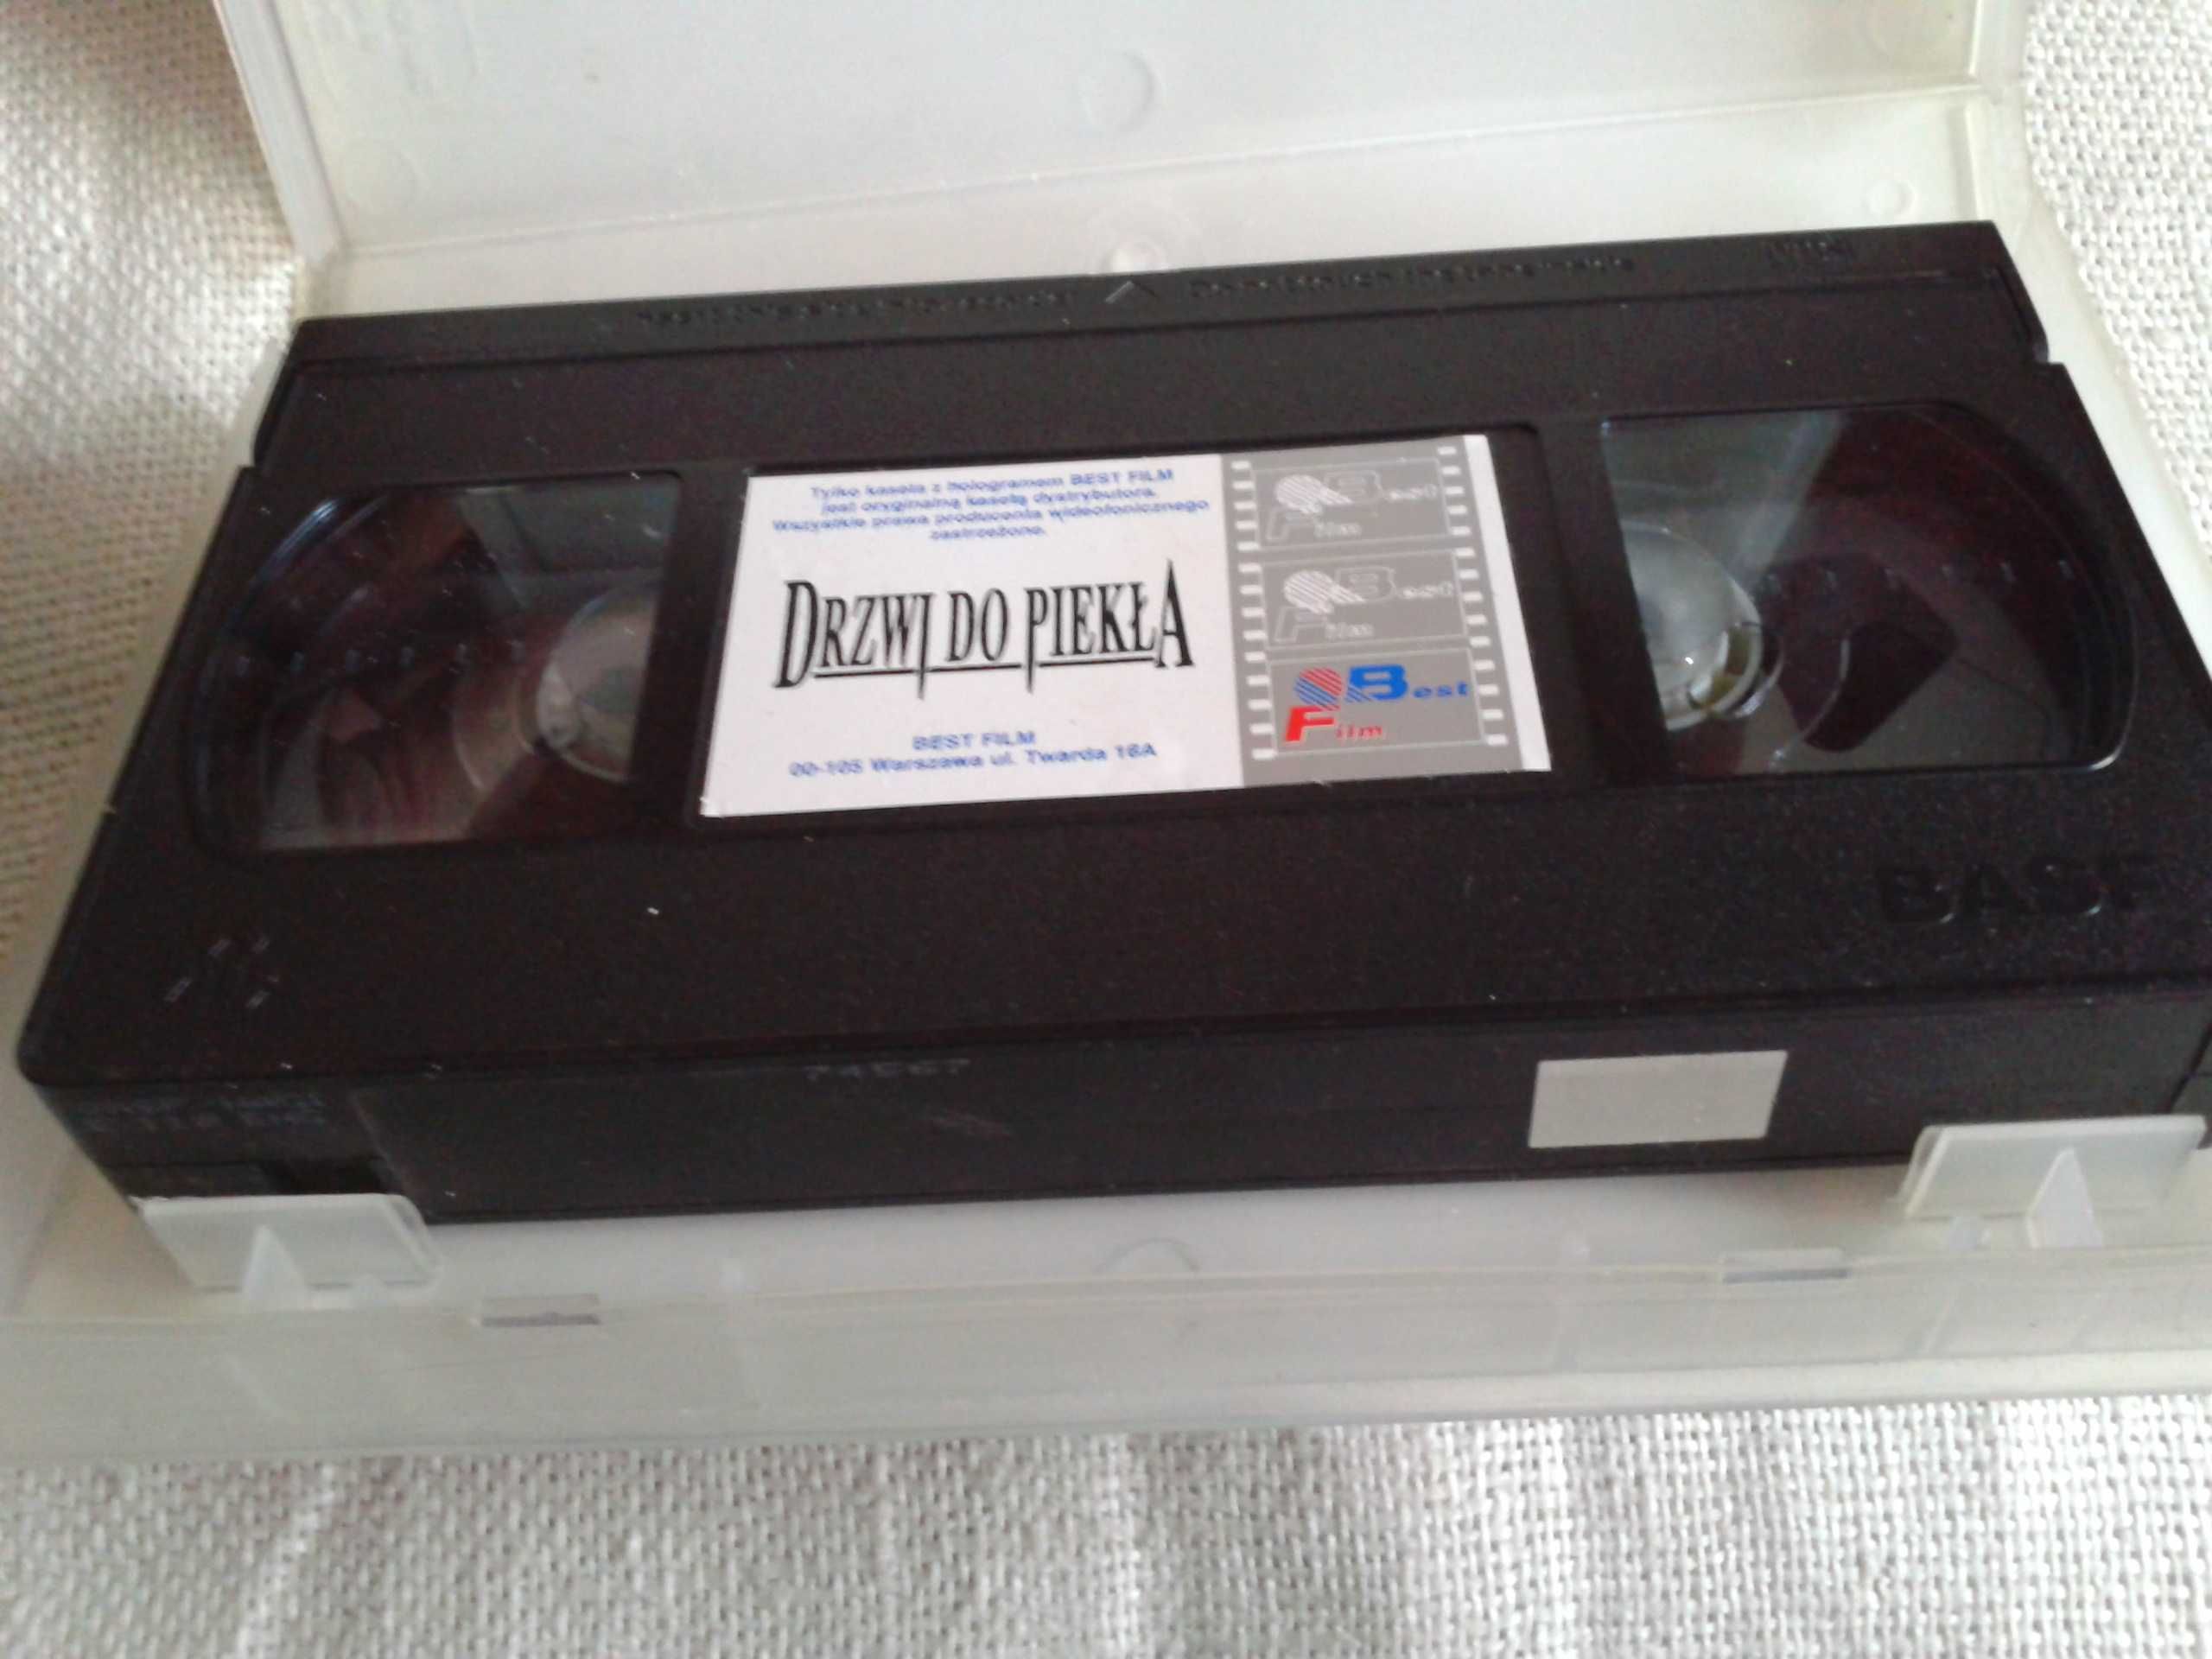 Drzwi do piekła  VHS